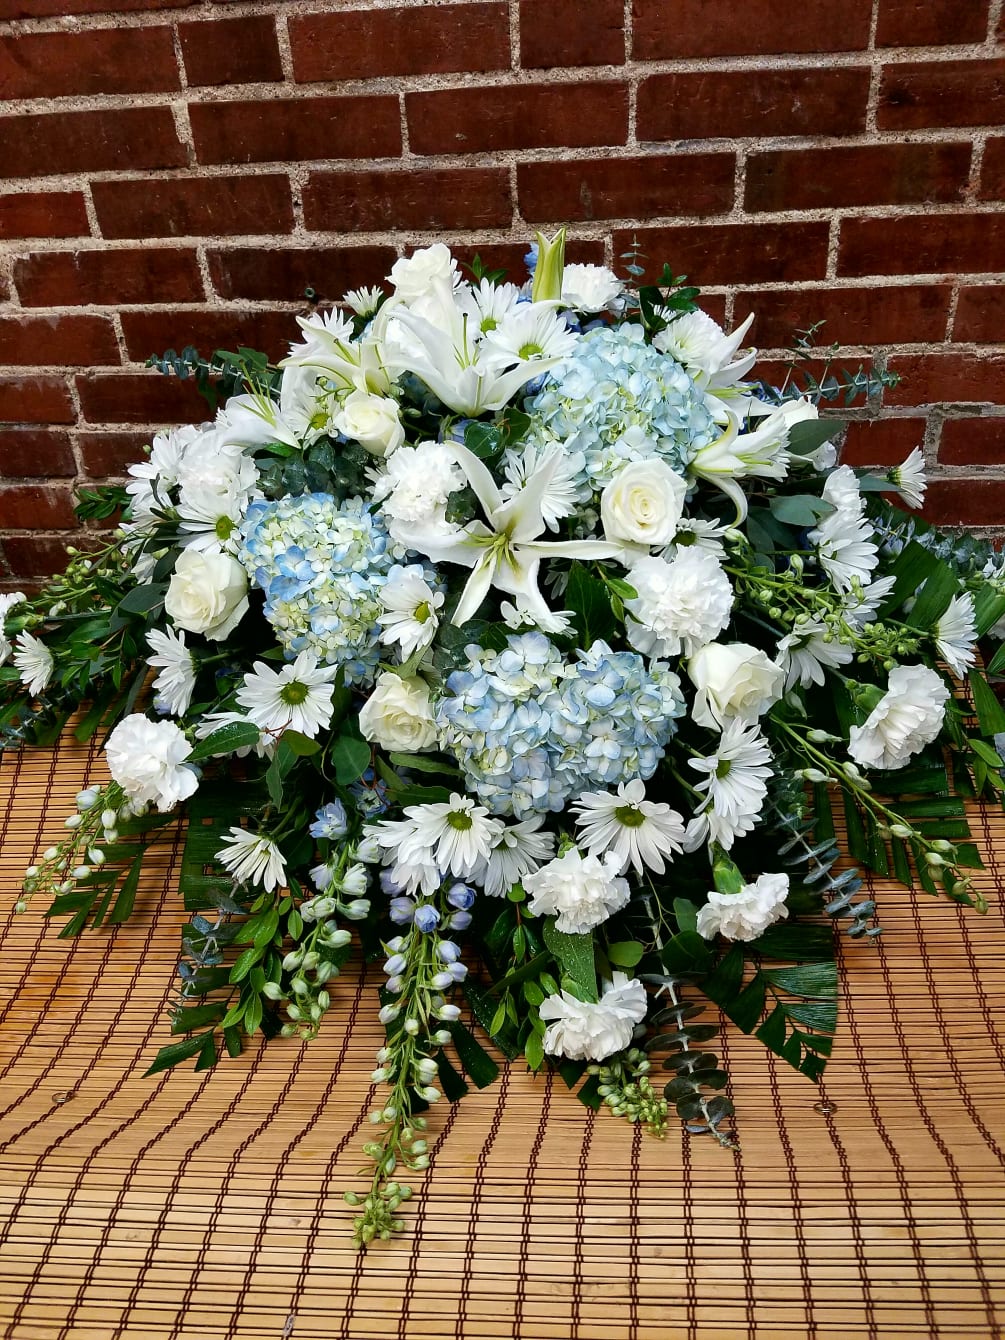 This casket adornment features blue hydrangeas, white lilies, blue delphinium, white roses